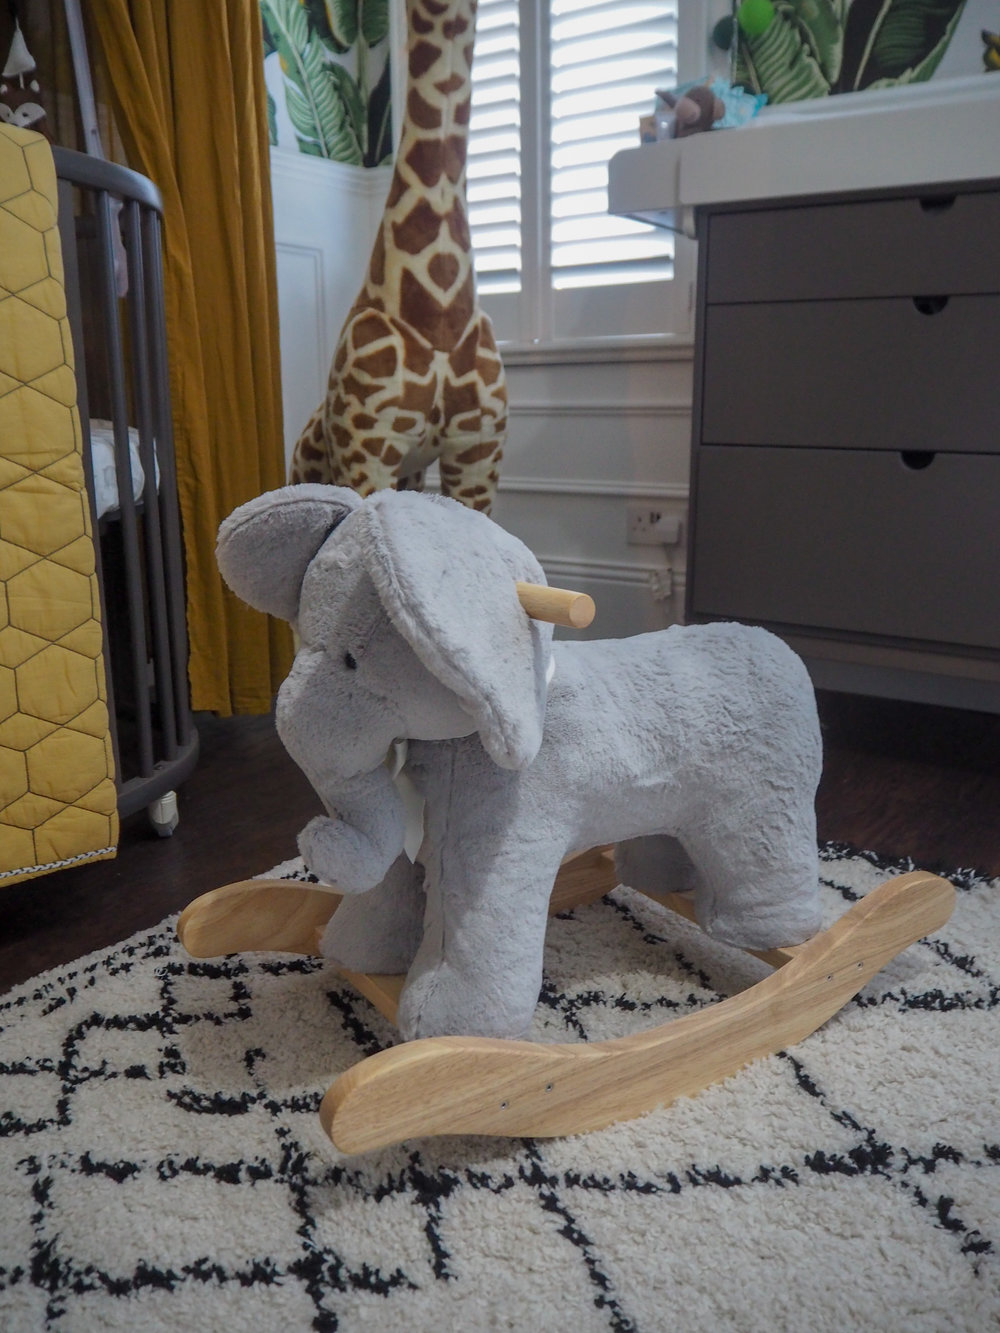 ALTICCIO Wink Safari Nursery per lettino PARAURTI X Large 50 x 200 cm Giraffa Elefante ** 